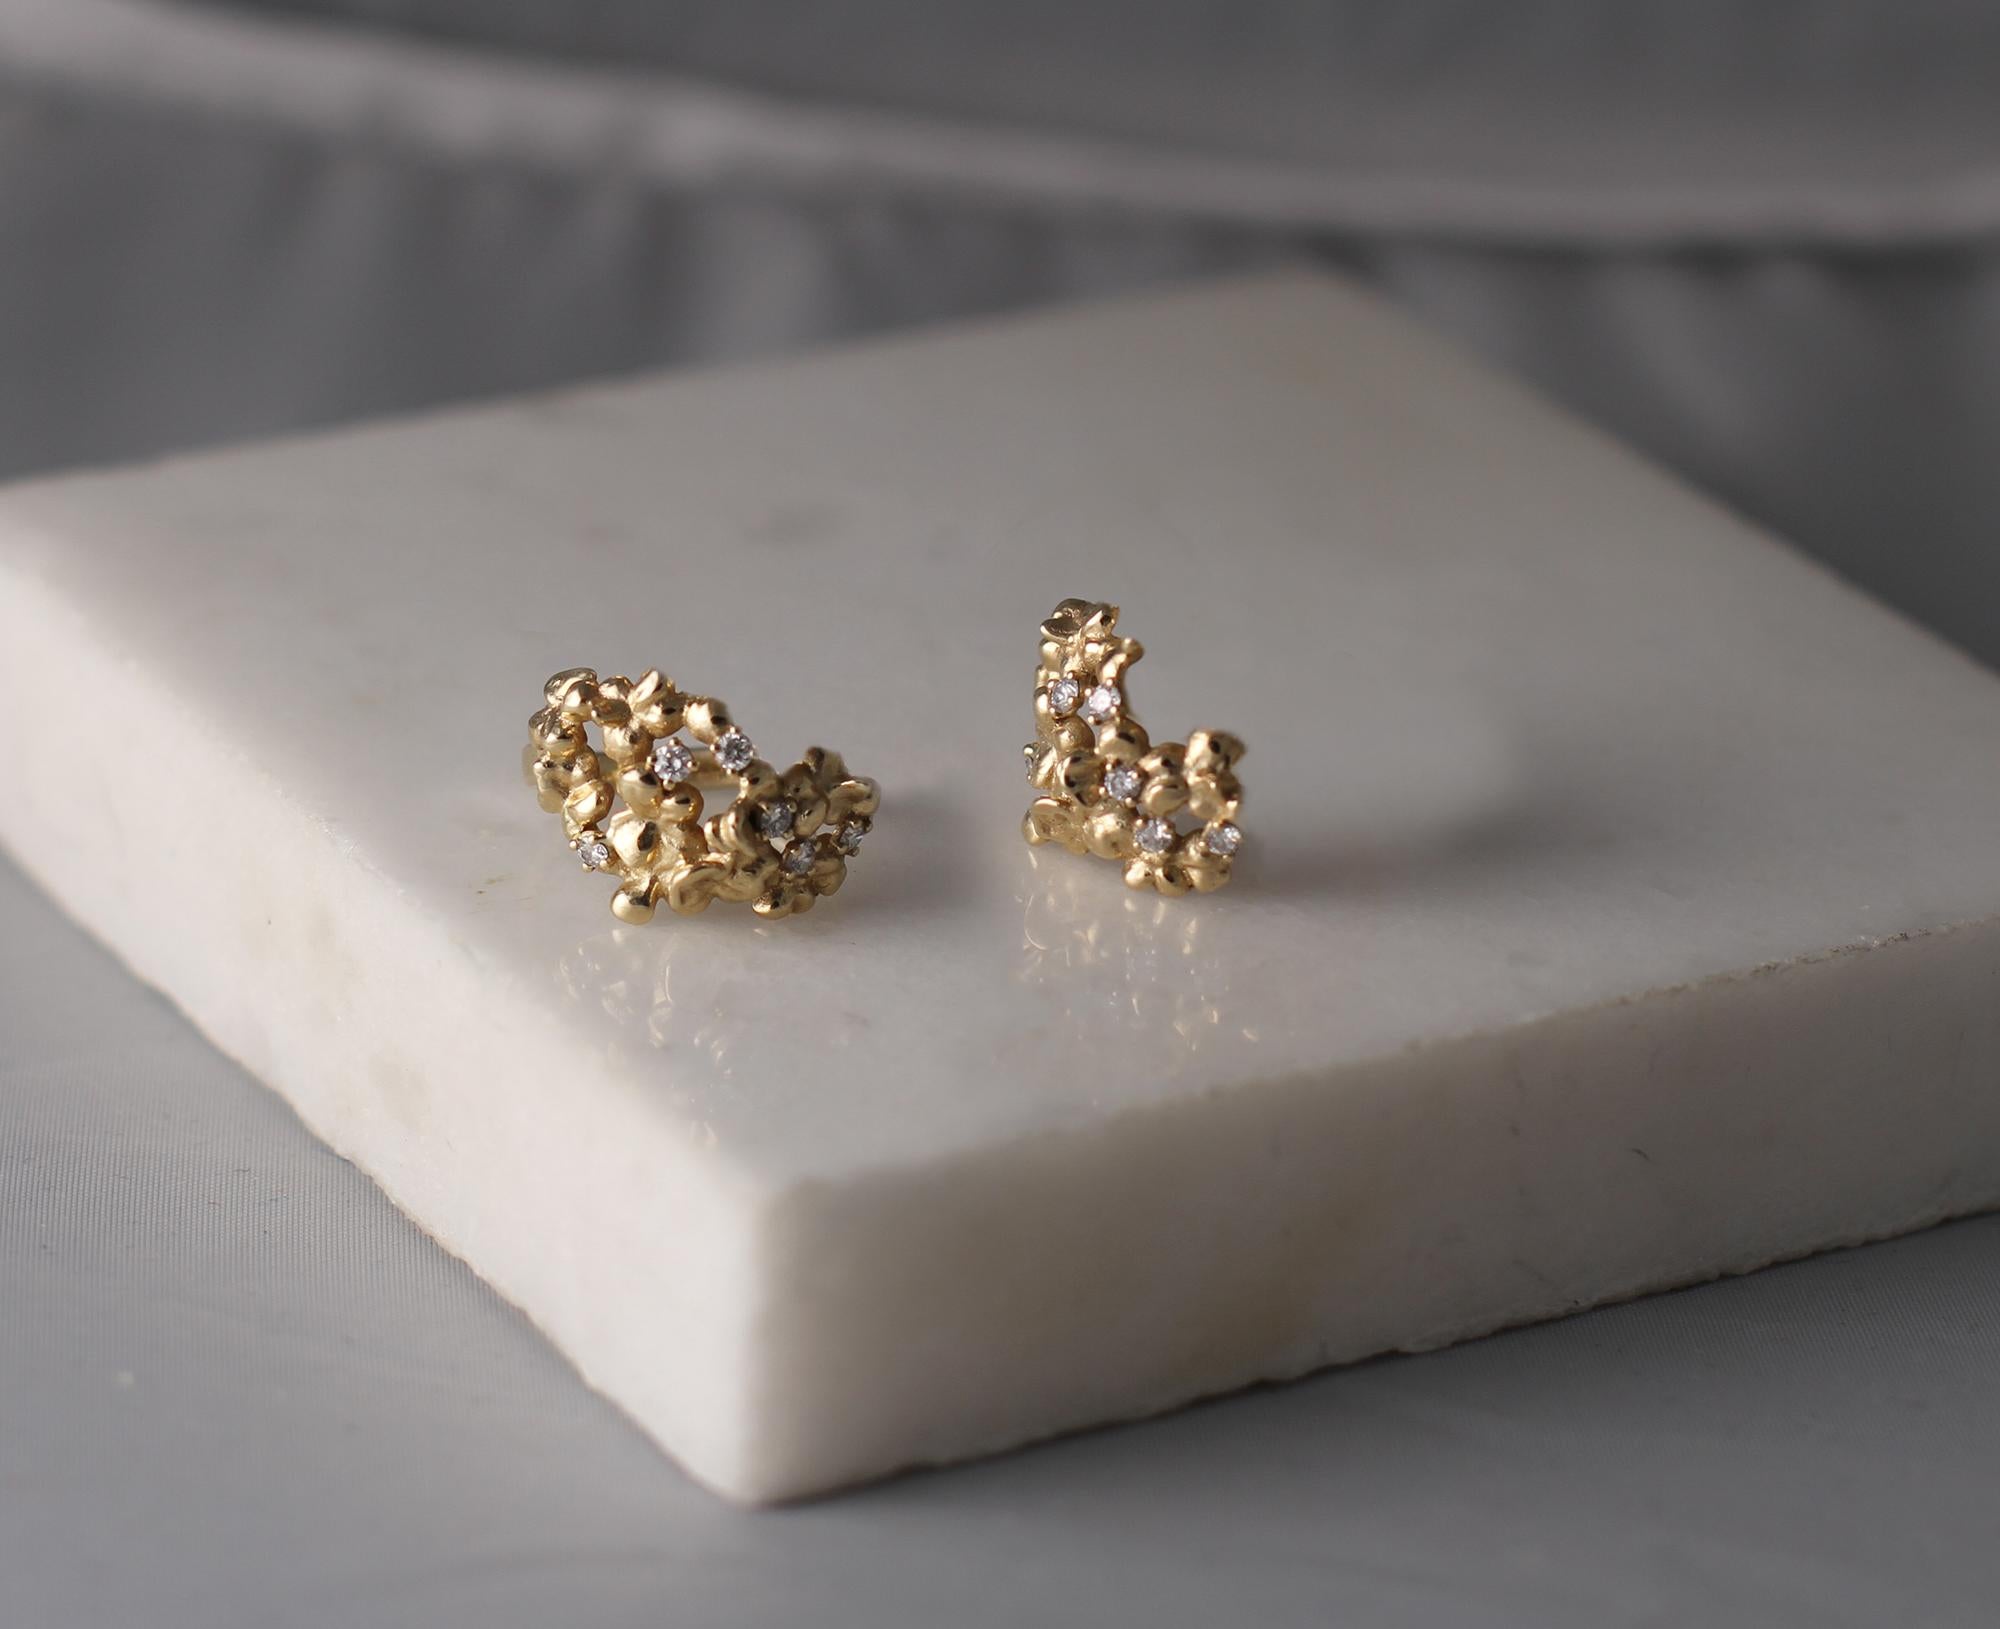 Diese modernen Hortensia-Ohrringe sind aus 18 Karat Roségold mit runden natürlichen Diamanten, VS, F-G. Das skulpturale Design verleiht der Oberfläche des Goldes zusätzliche Akzente. Die Diamanten sorgen für das zarte Blinken. Diese